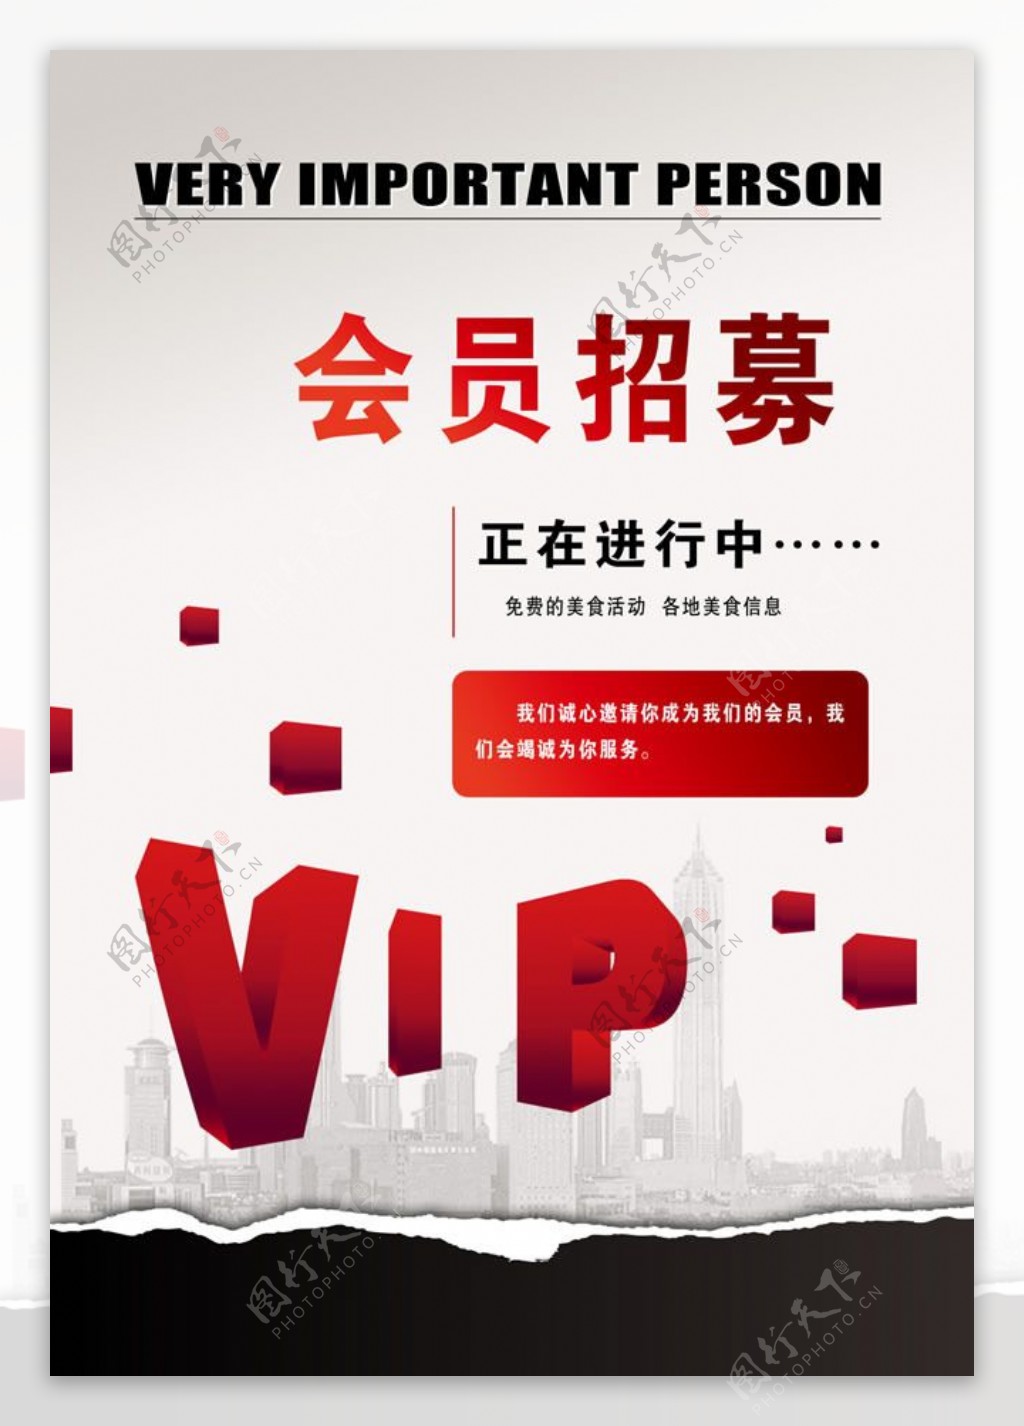 VIP会员招募宣传海报psd素材